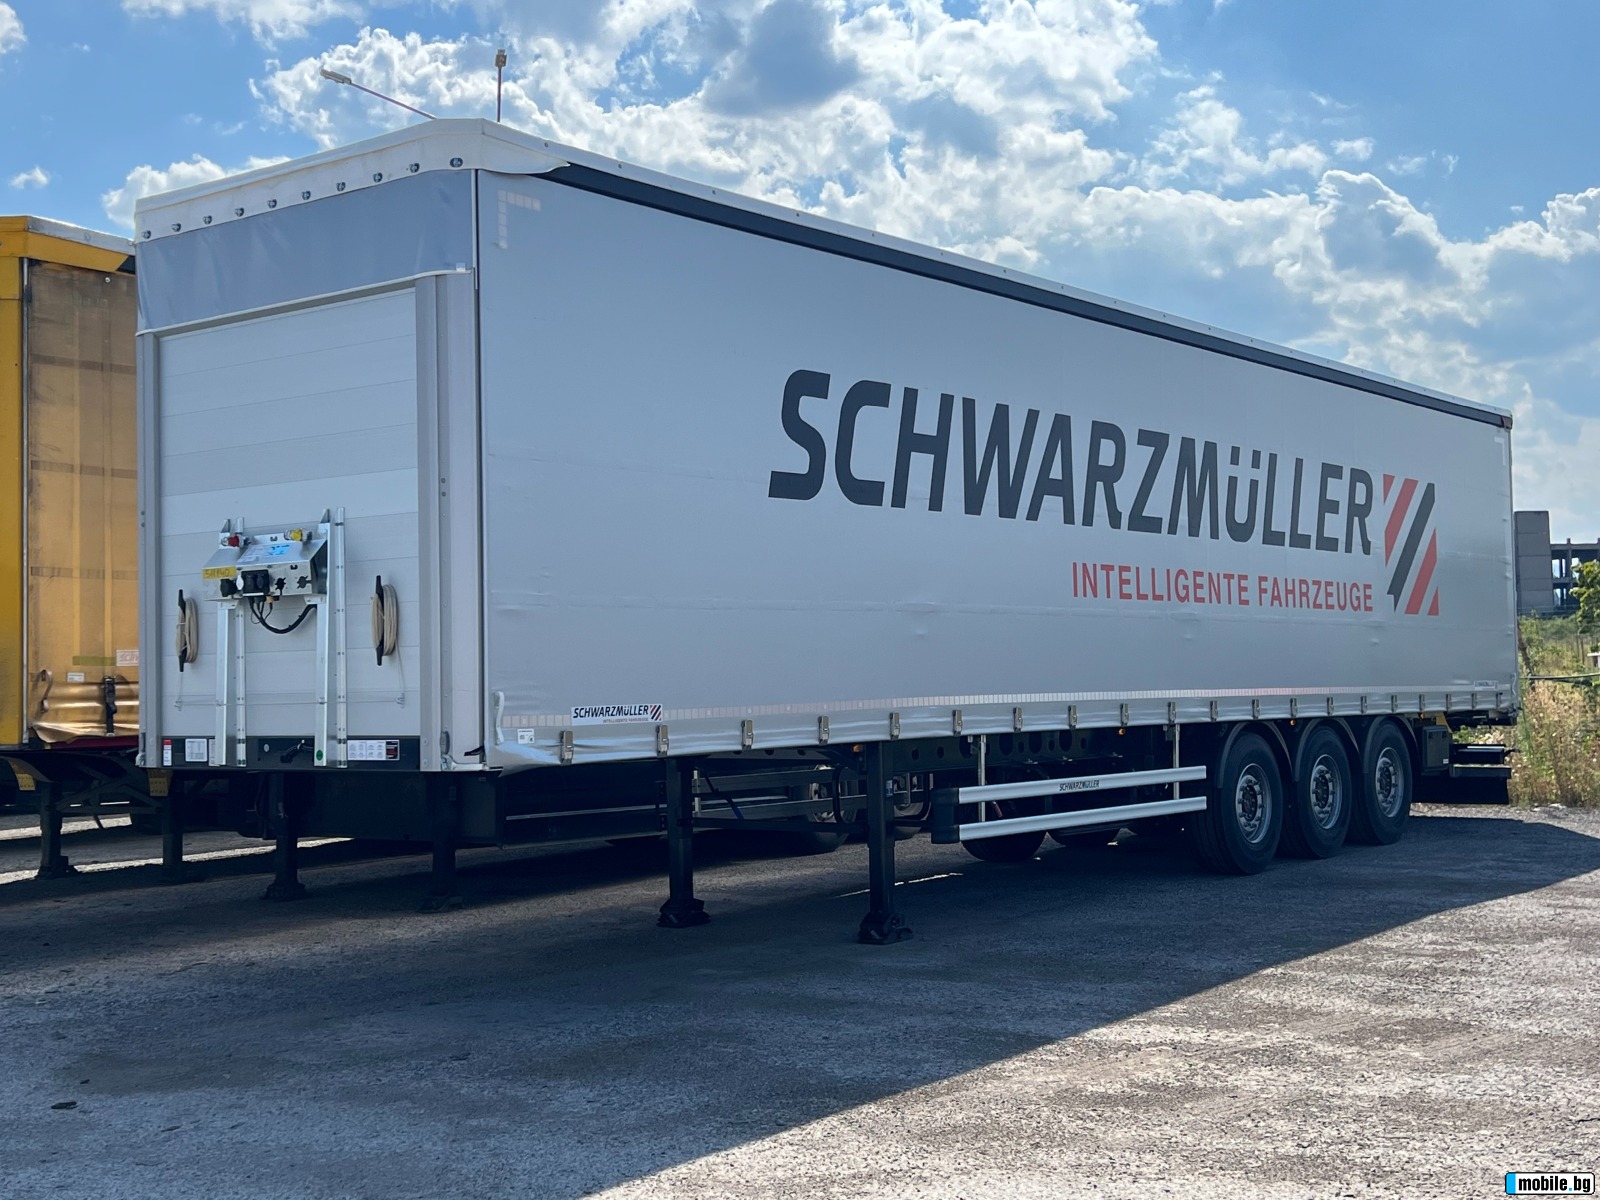  Schwarzmuller J-Serie, 5570kg, Goodyear,  | Mobile.bg   2